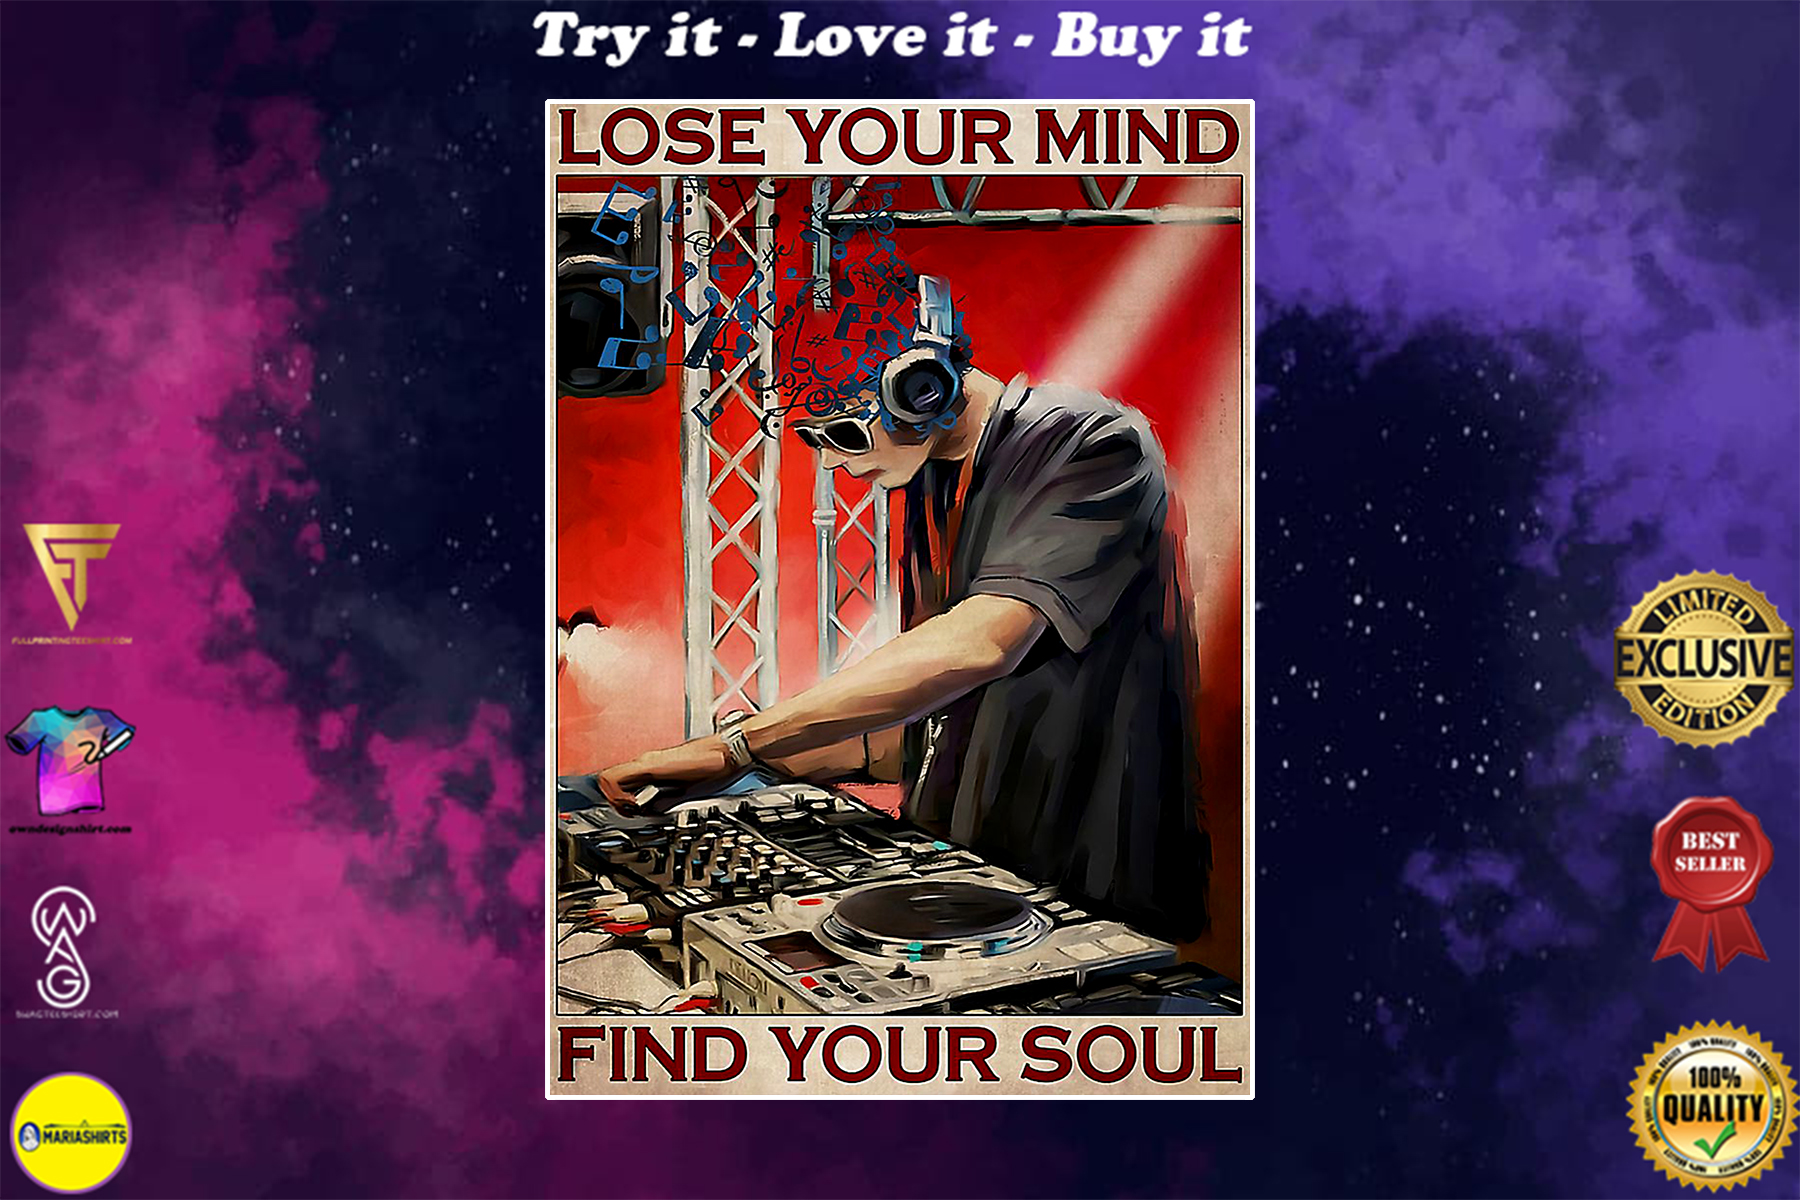 dj lose your mind find your soul vintage poster